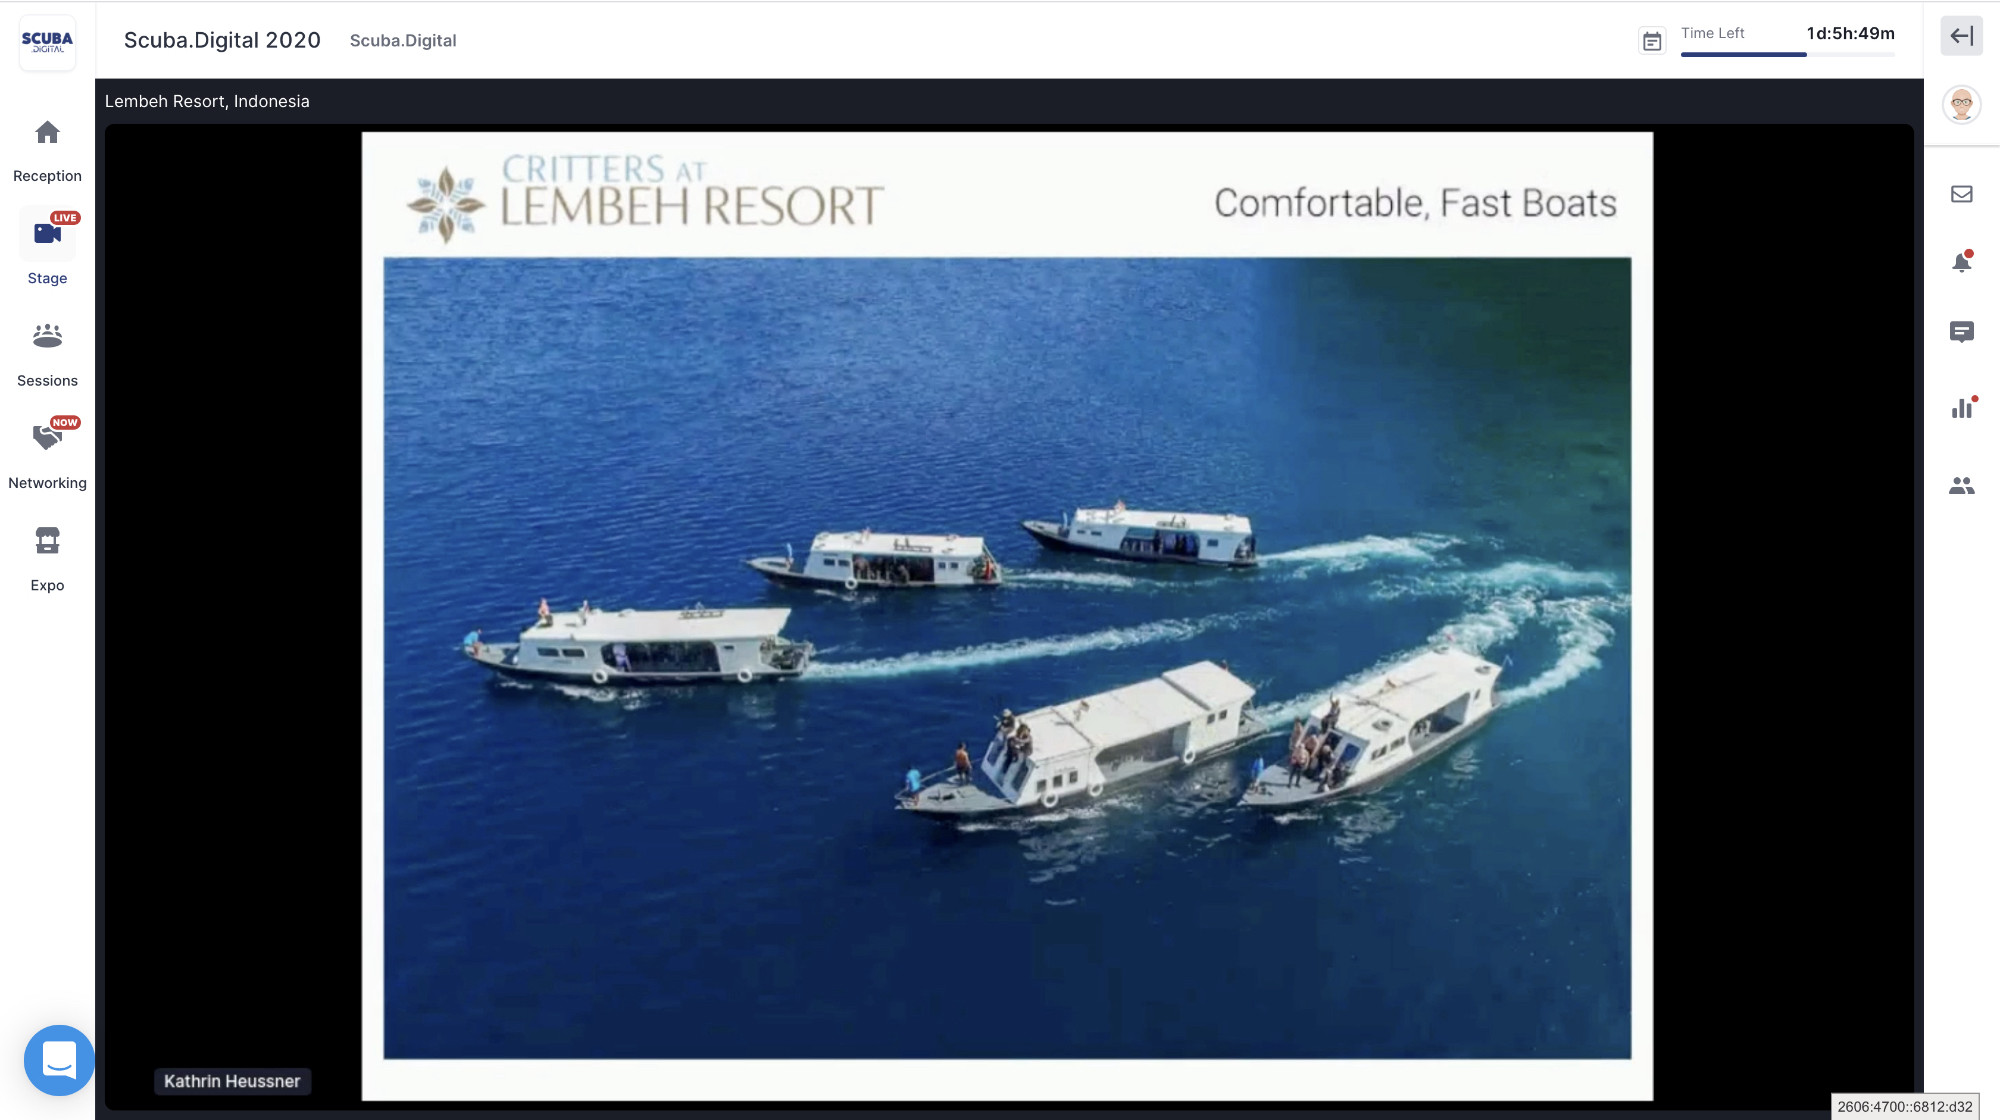 Lembeh Resort